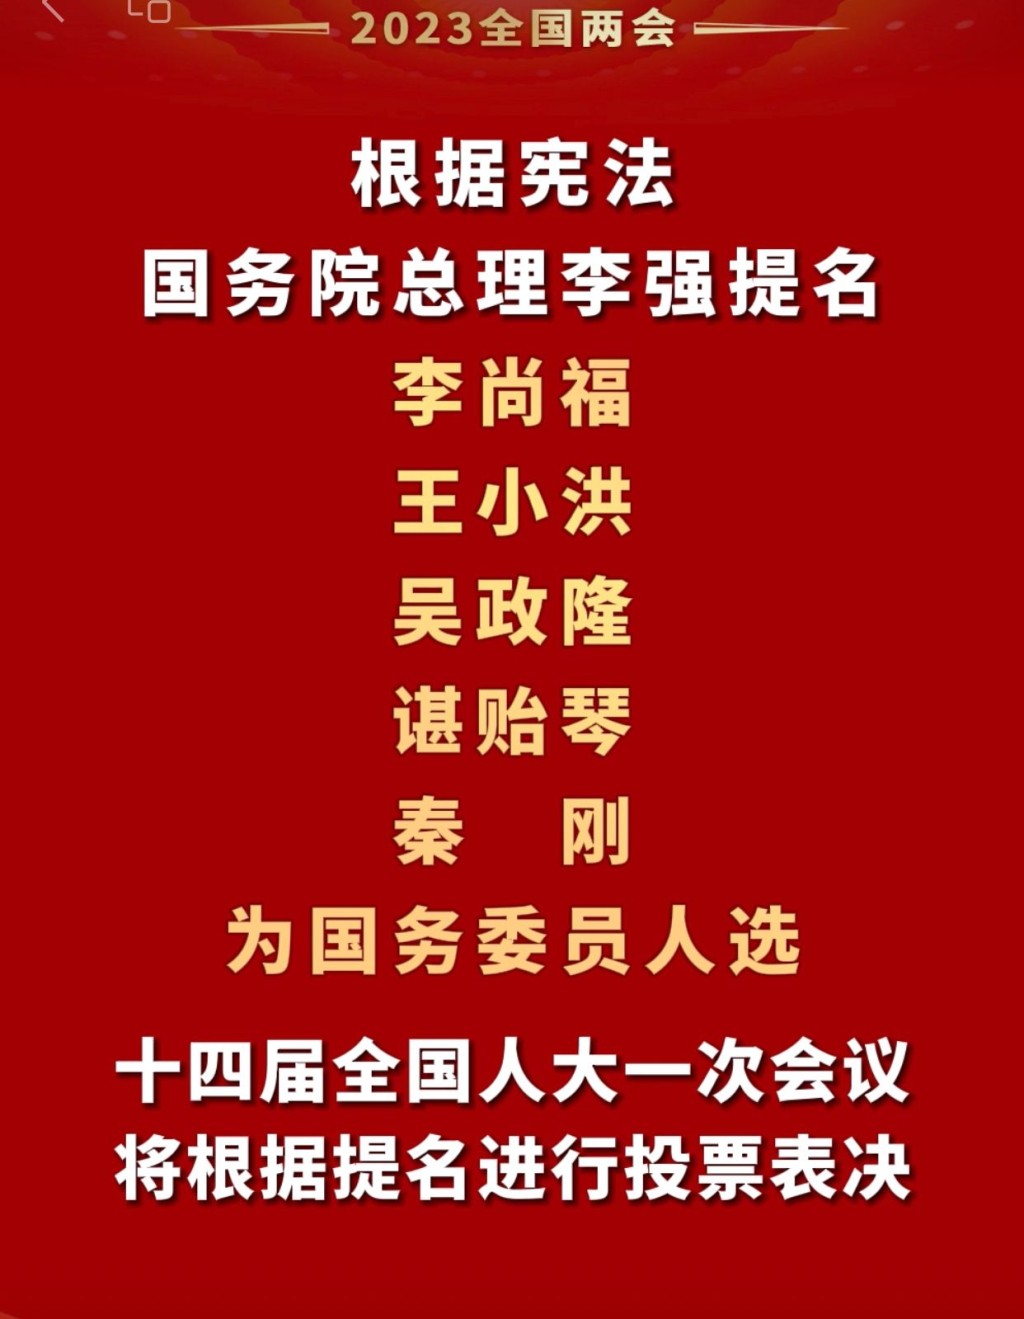 李强国务委员提名名单。